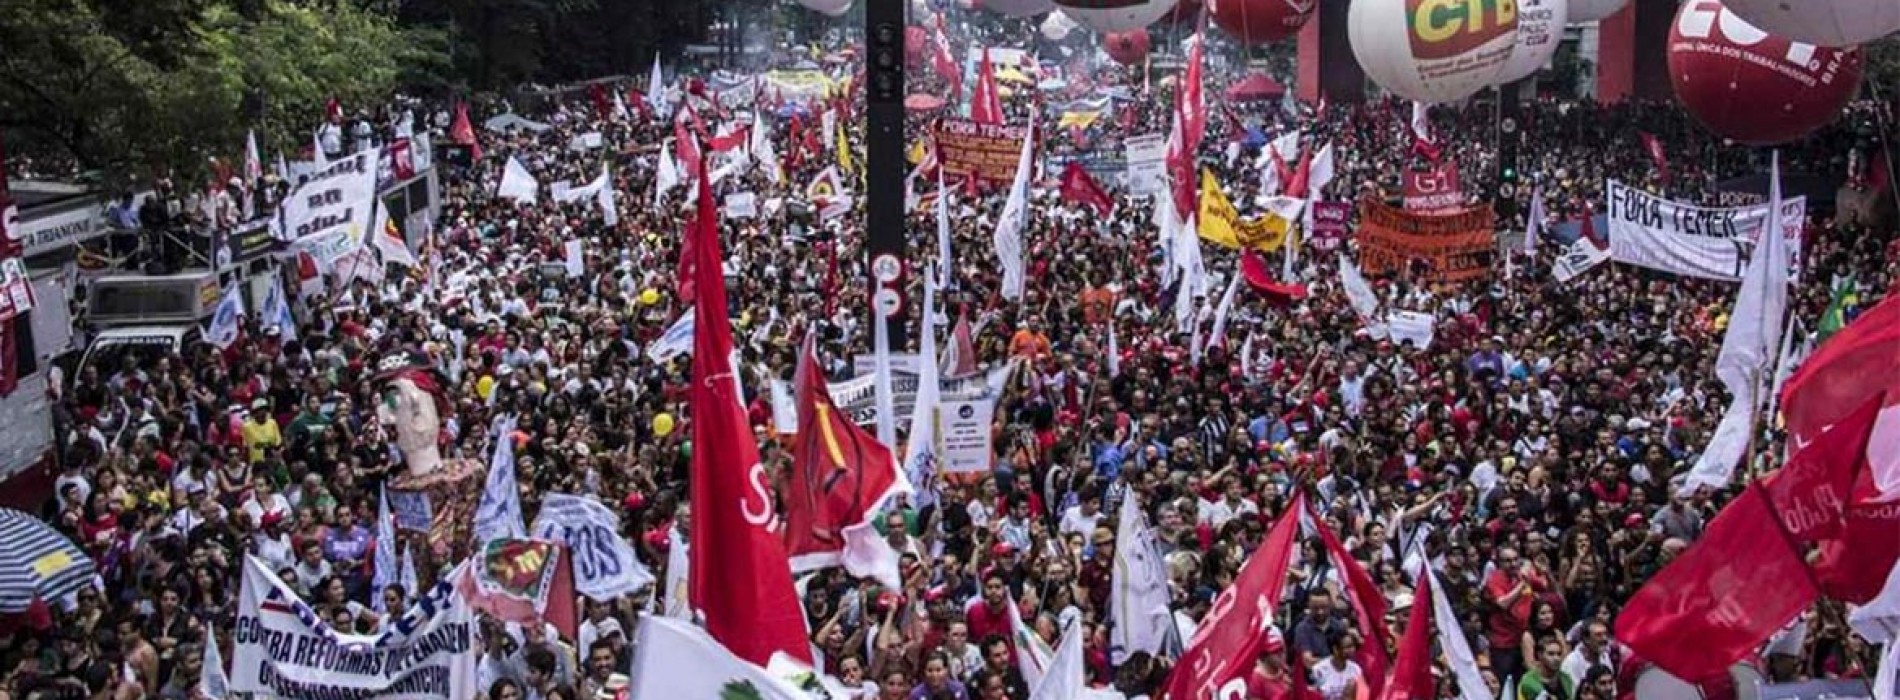 Centrais Sindicais convocam Greve Geral: 28/04 vamos parar o Brasil!